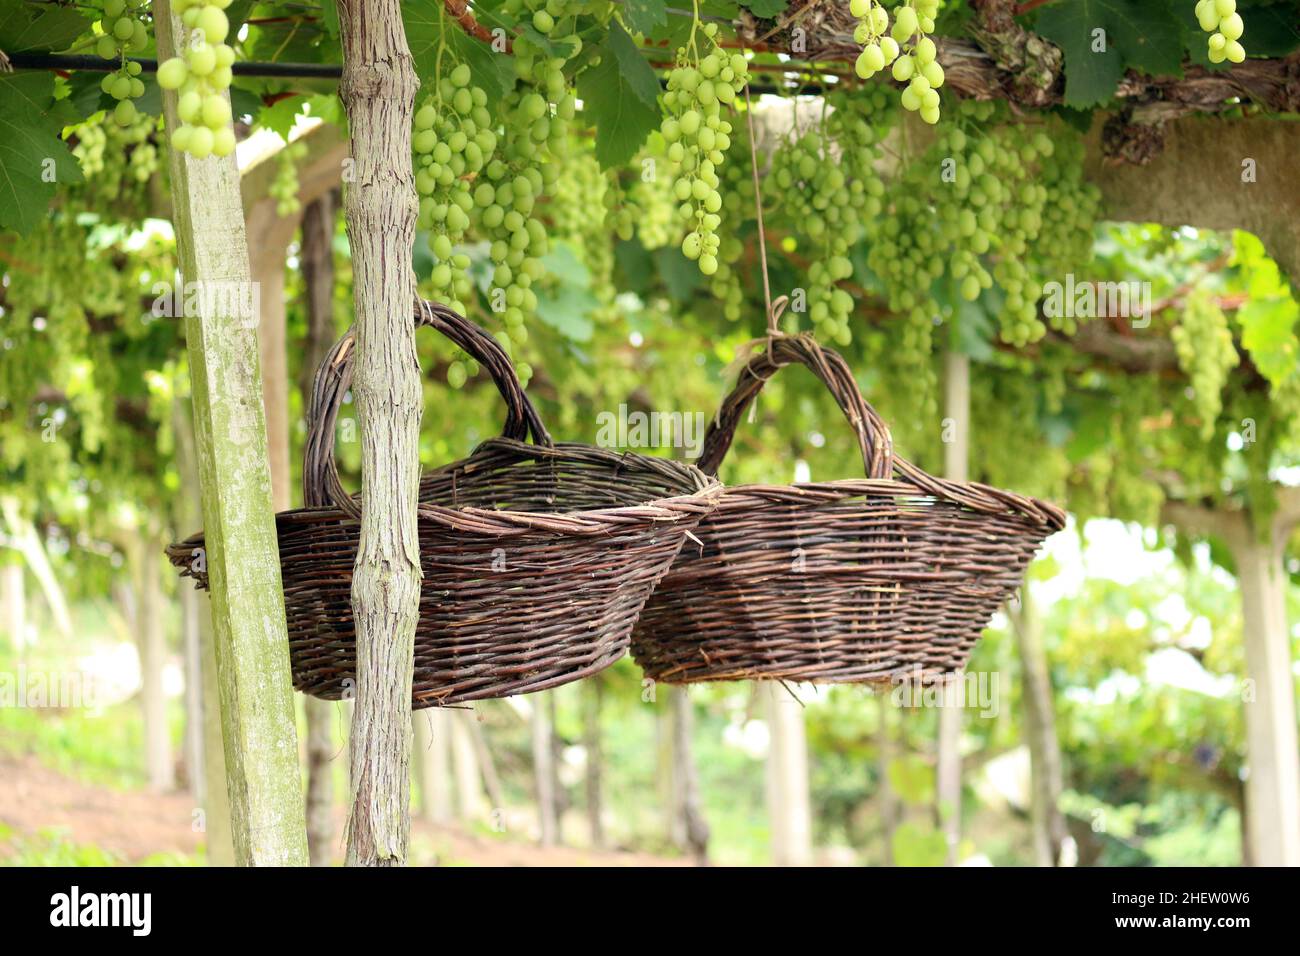 En la parte posterior de un inmenso viñedo, entre los grandes racimos de uvas verdes, se cuelgan dos cestas hechas a mano, producidas con mimbre. Foto de stock